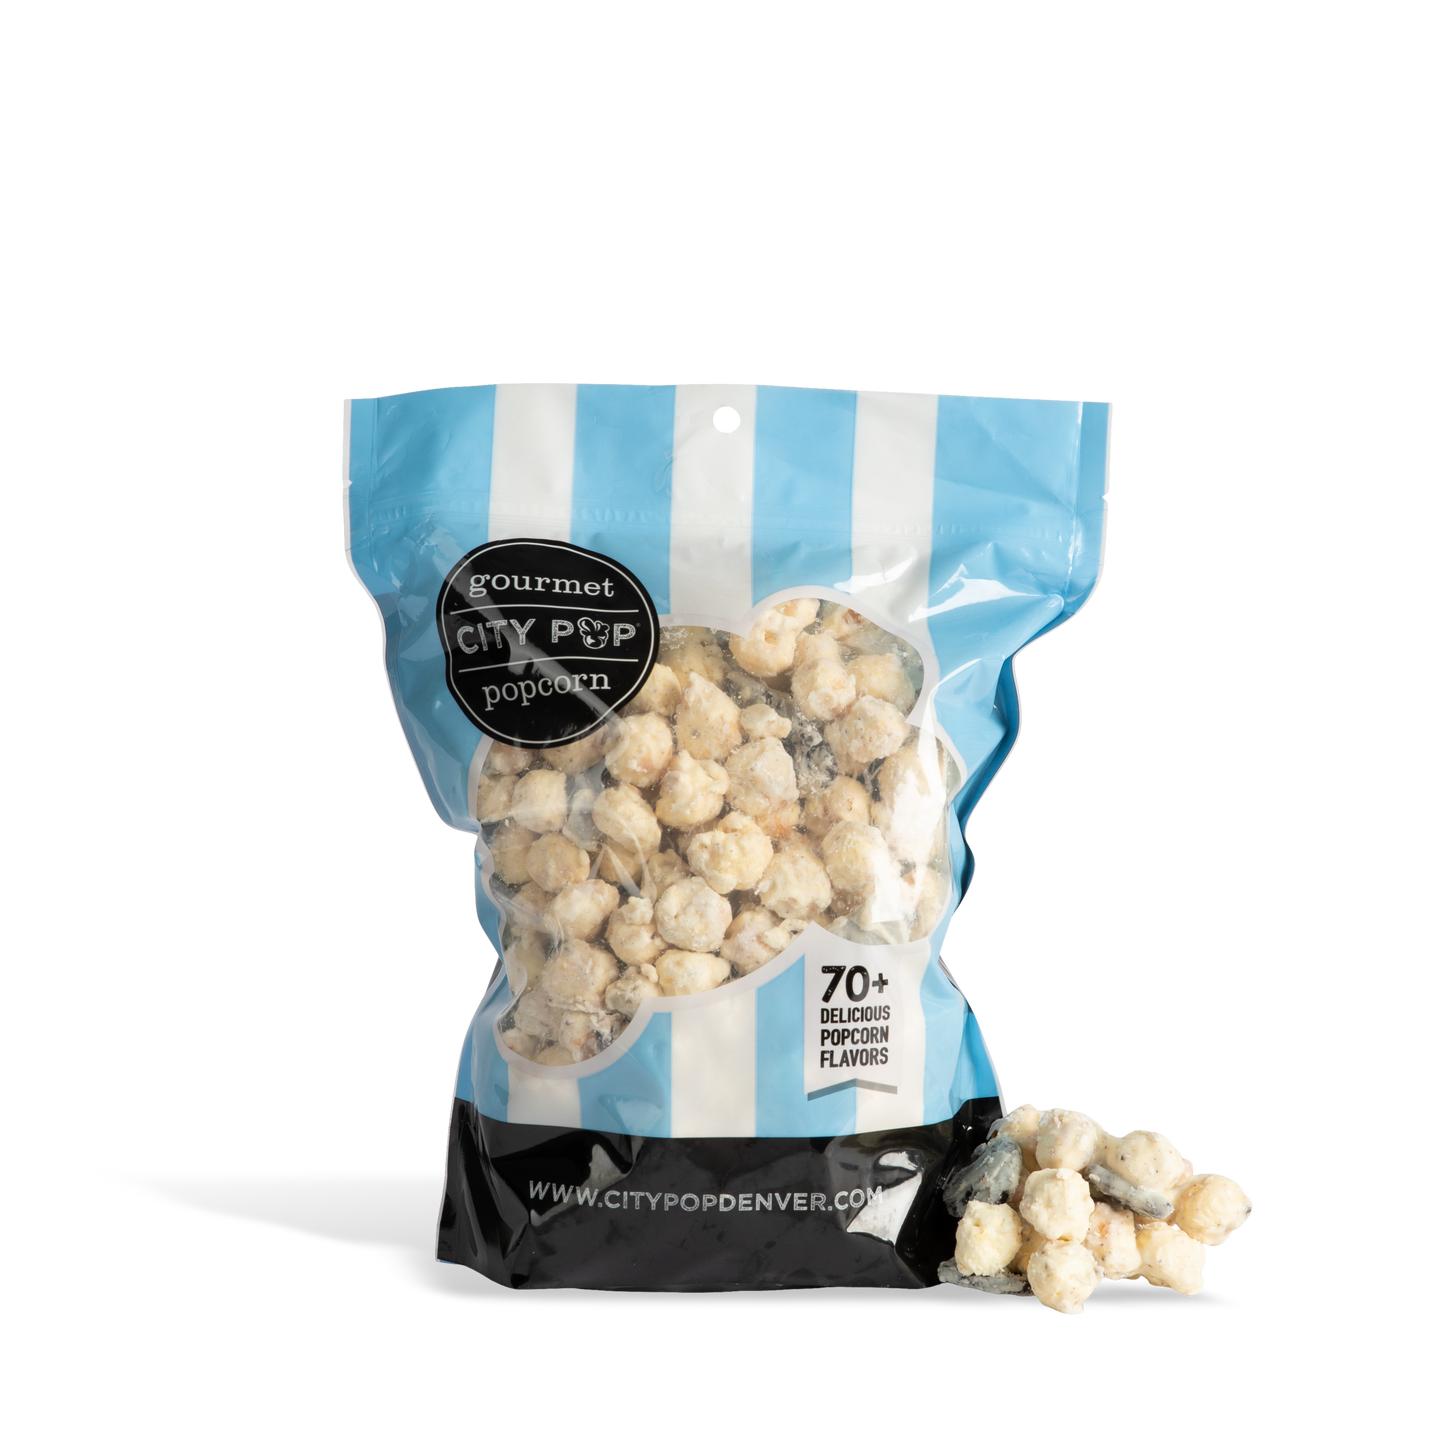 City Pop Cookies 'N Cream Popcorn Bag with Kernel